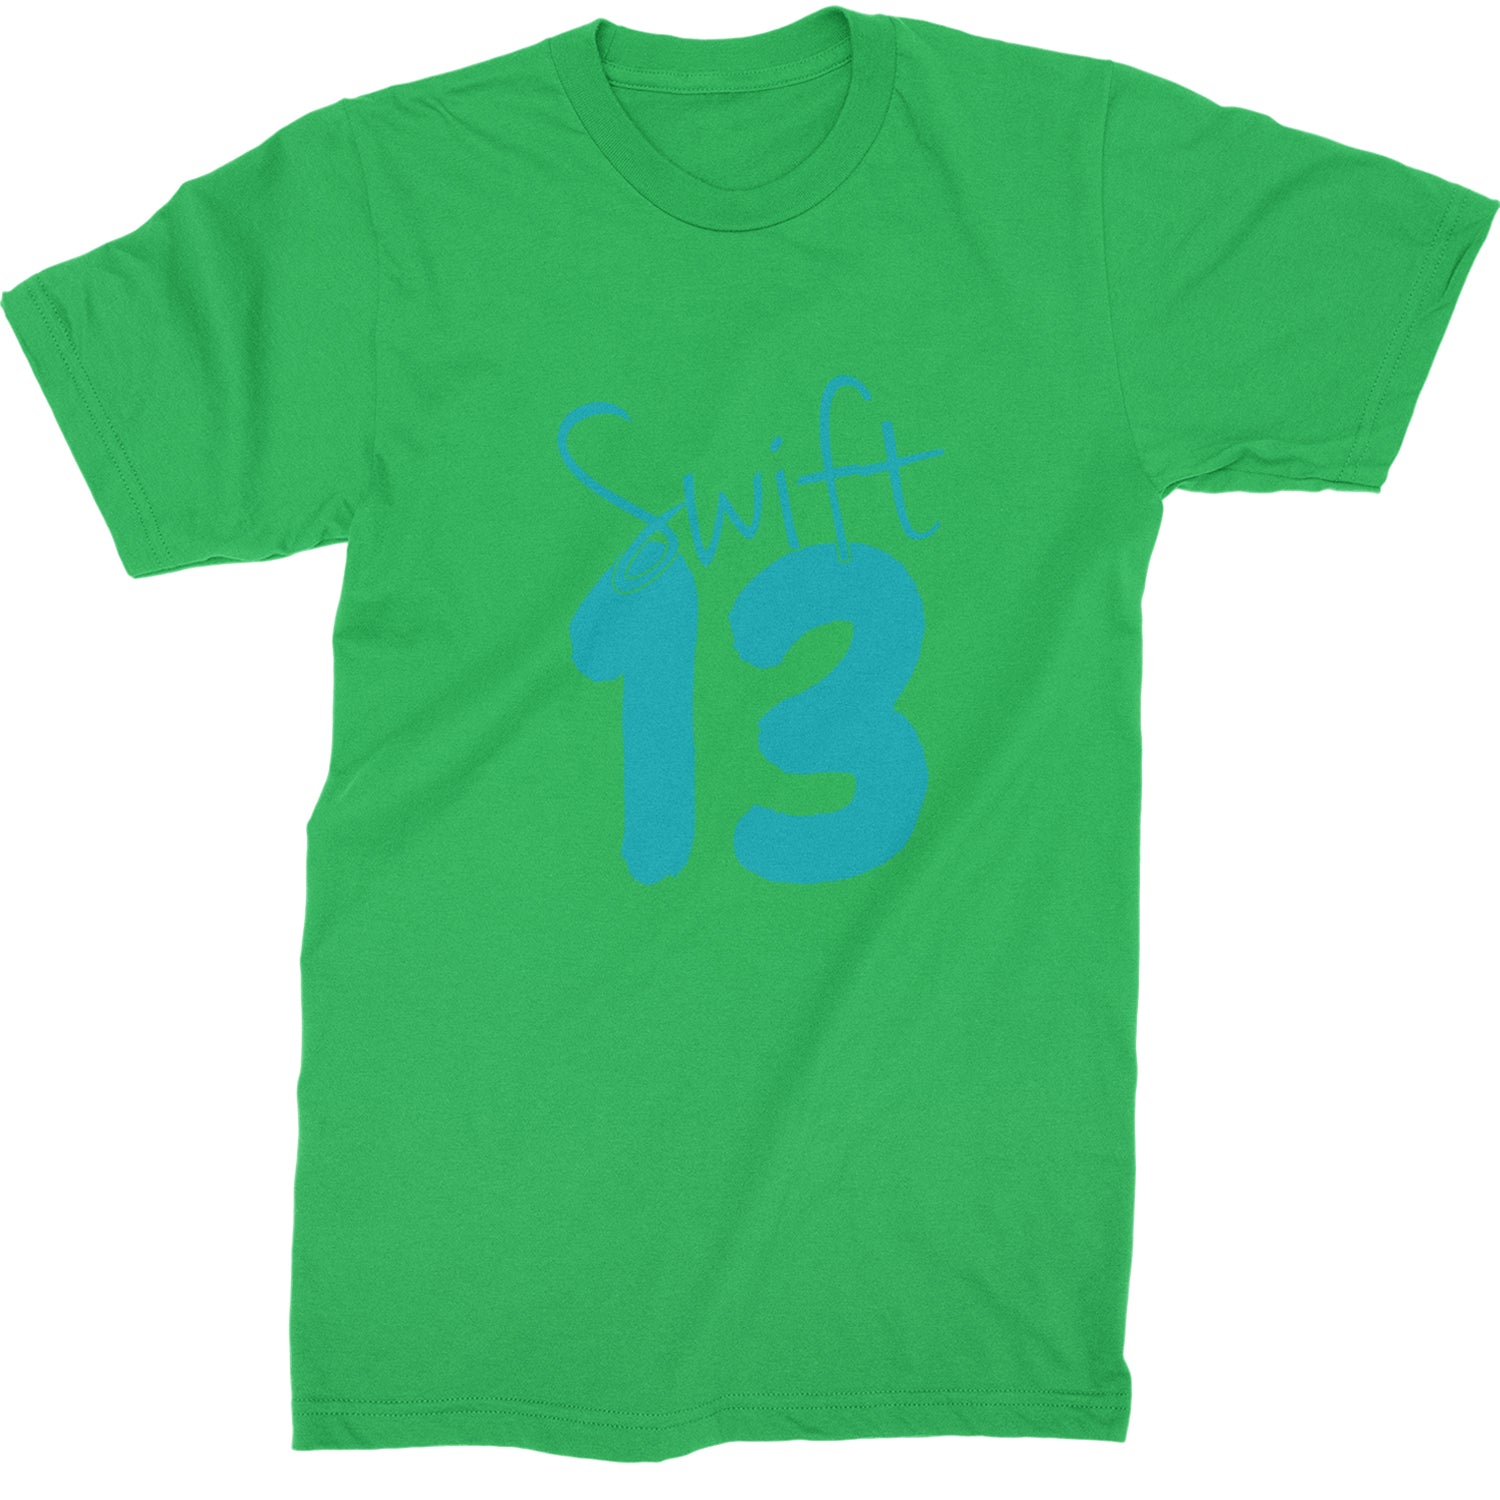 13 Swift 13 Lucky Number Era TTPD Mens T-shirt Kelly Green